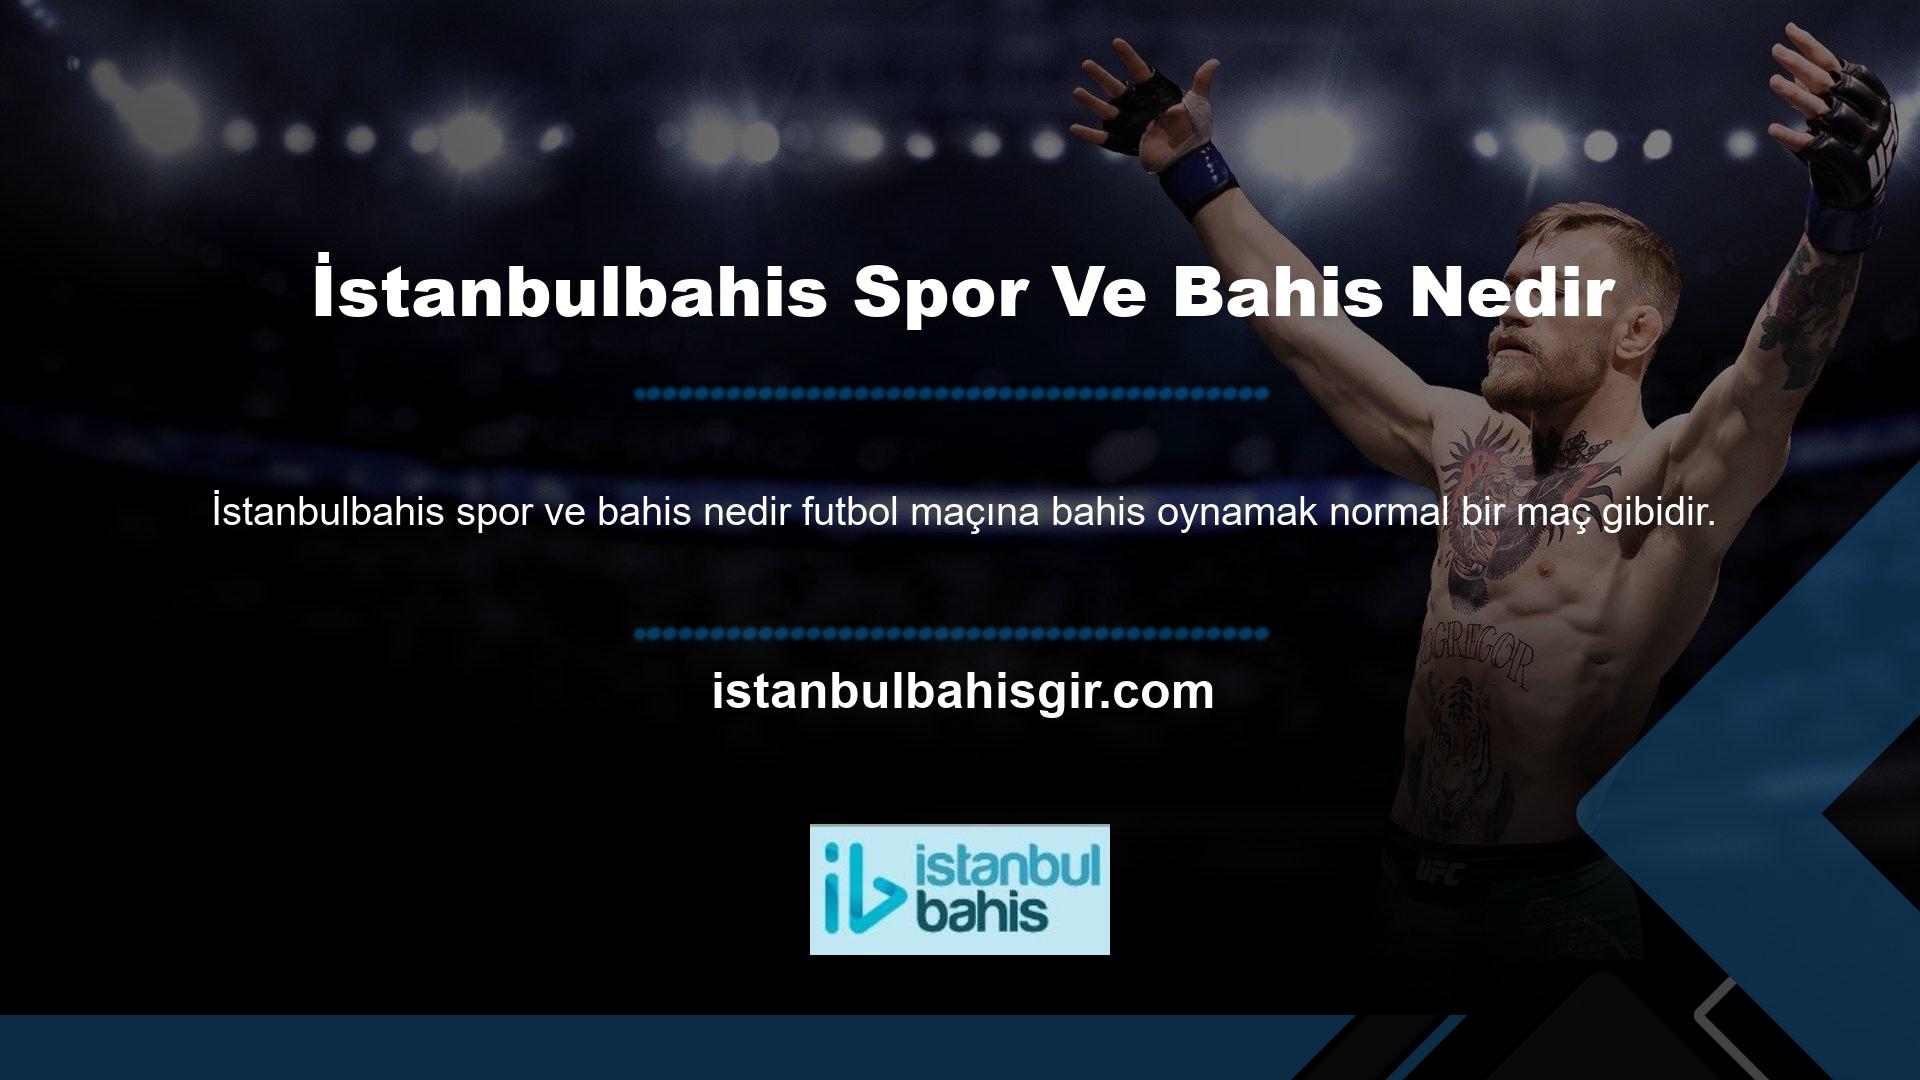 İstanbulbahis sanal bahisler, galibiyet bahisleri, ara bahisler, gol bahisleri gibi birçok seçenek sunmaktadır